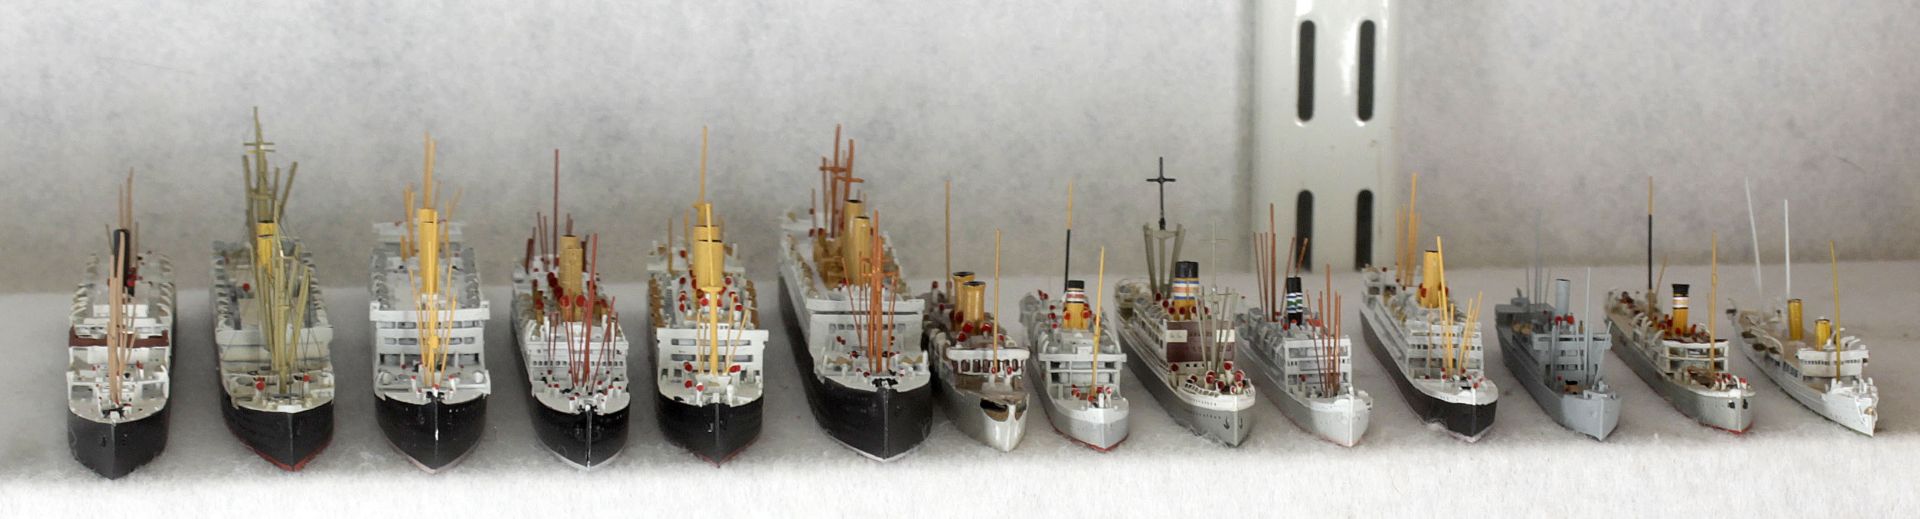 14 Metallschiffsmodell, deutsche Handelsschiffe von 1900-1914